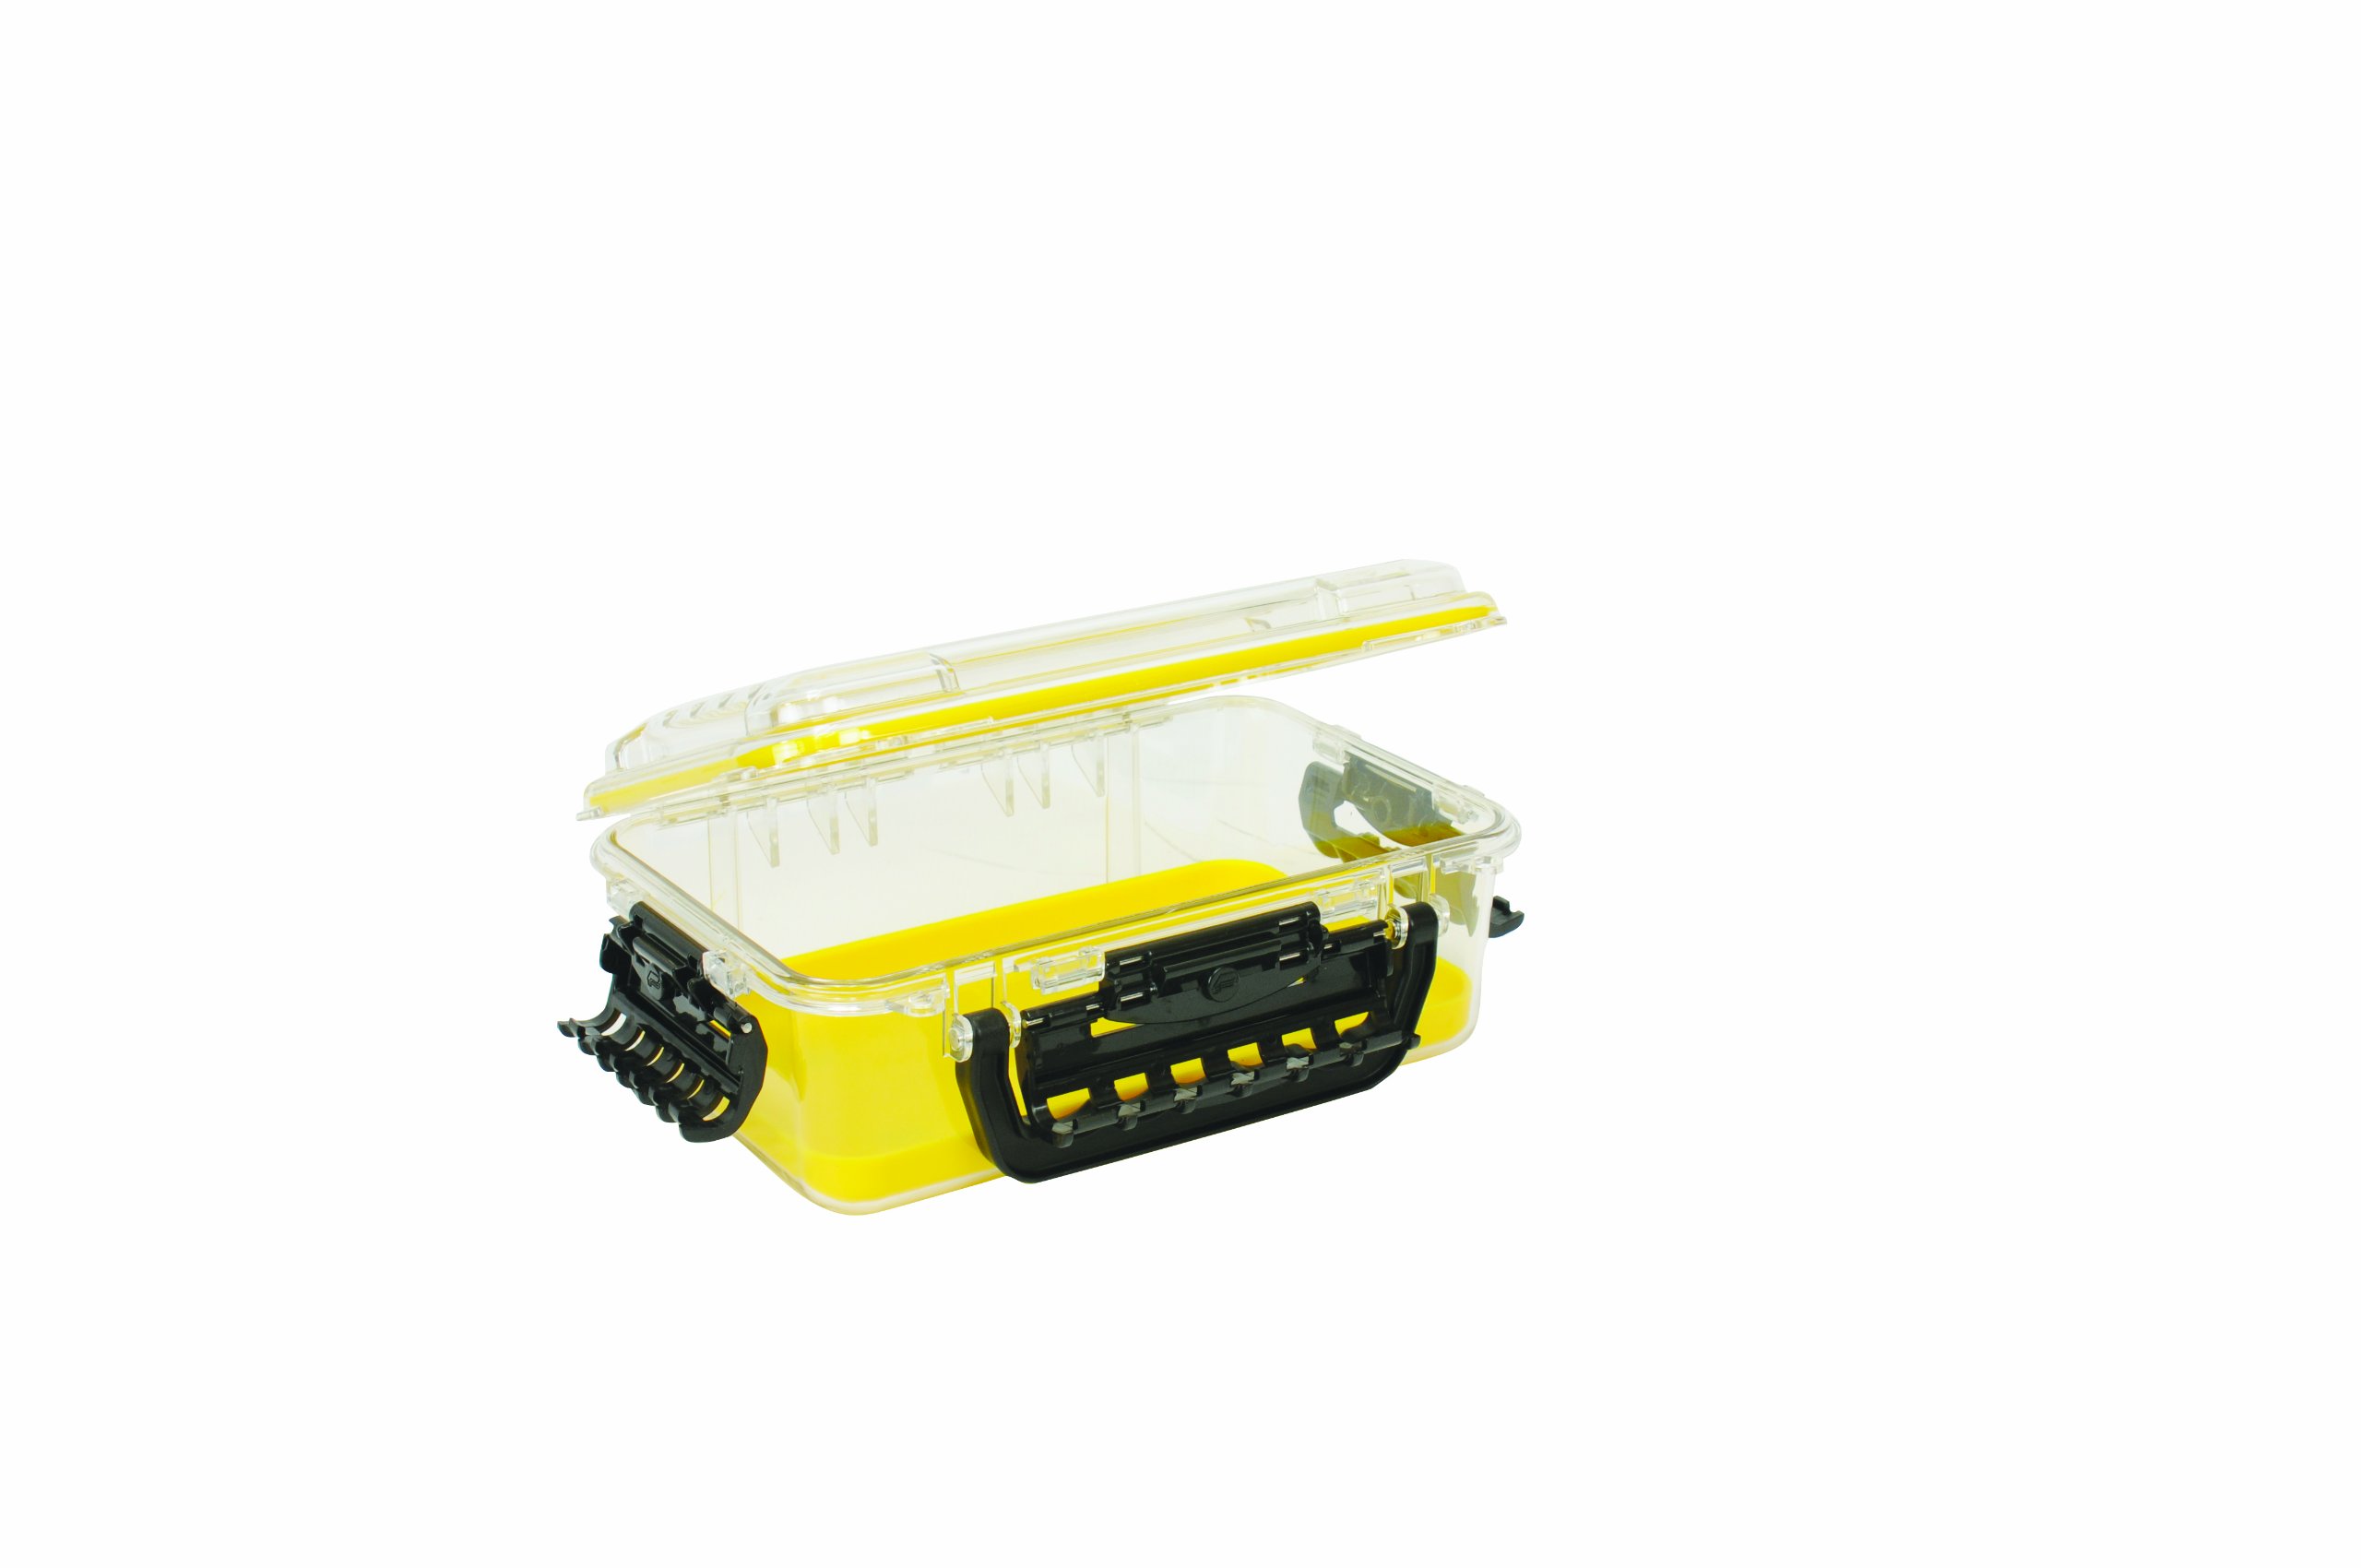  Plano Guide Series 3700 Field Box Waterproof Case